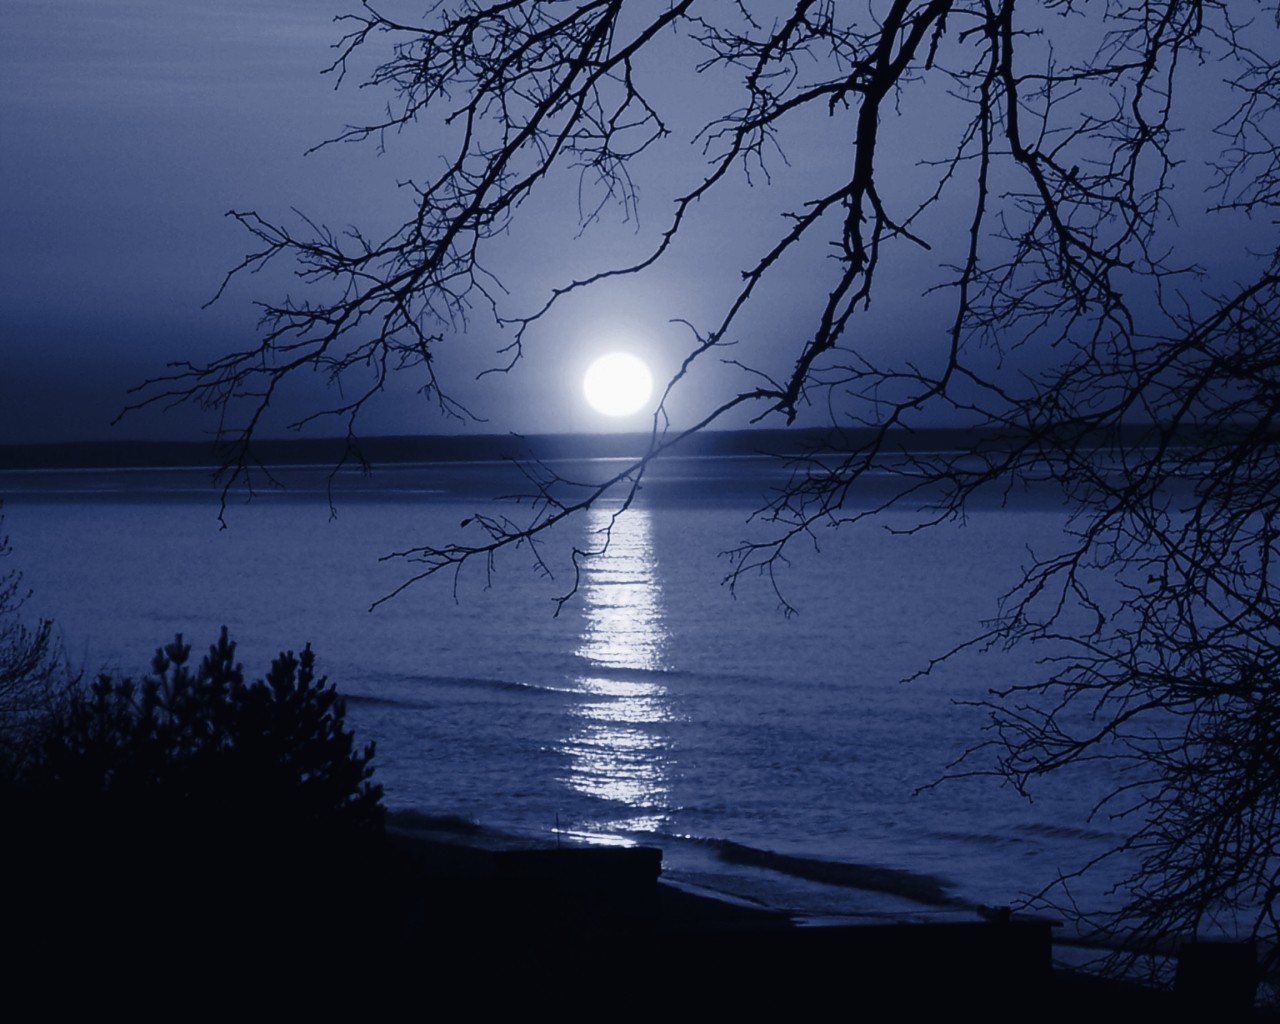 Тихого свет луны. Иллюстрация к стихотворению Фета еще Майская ночь. Рисунок к стихотворению Фета еще Майская ночь. Лунная ночь. Река ночью.